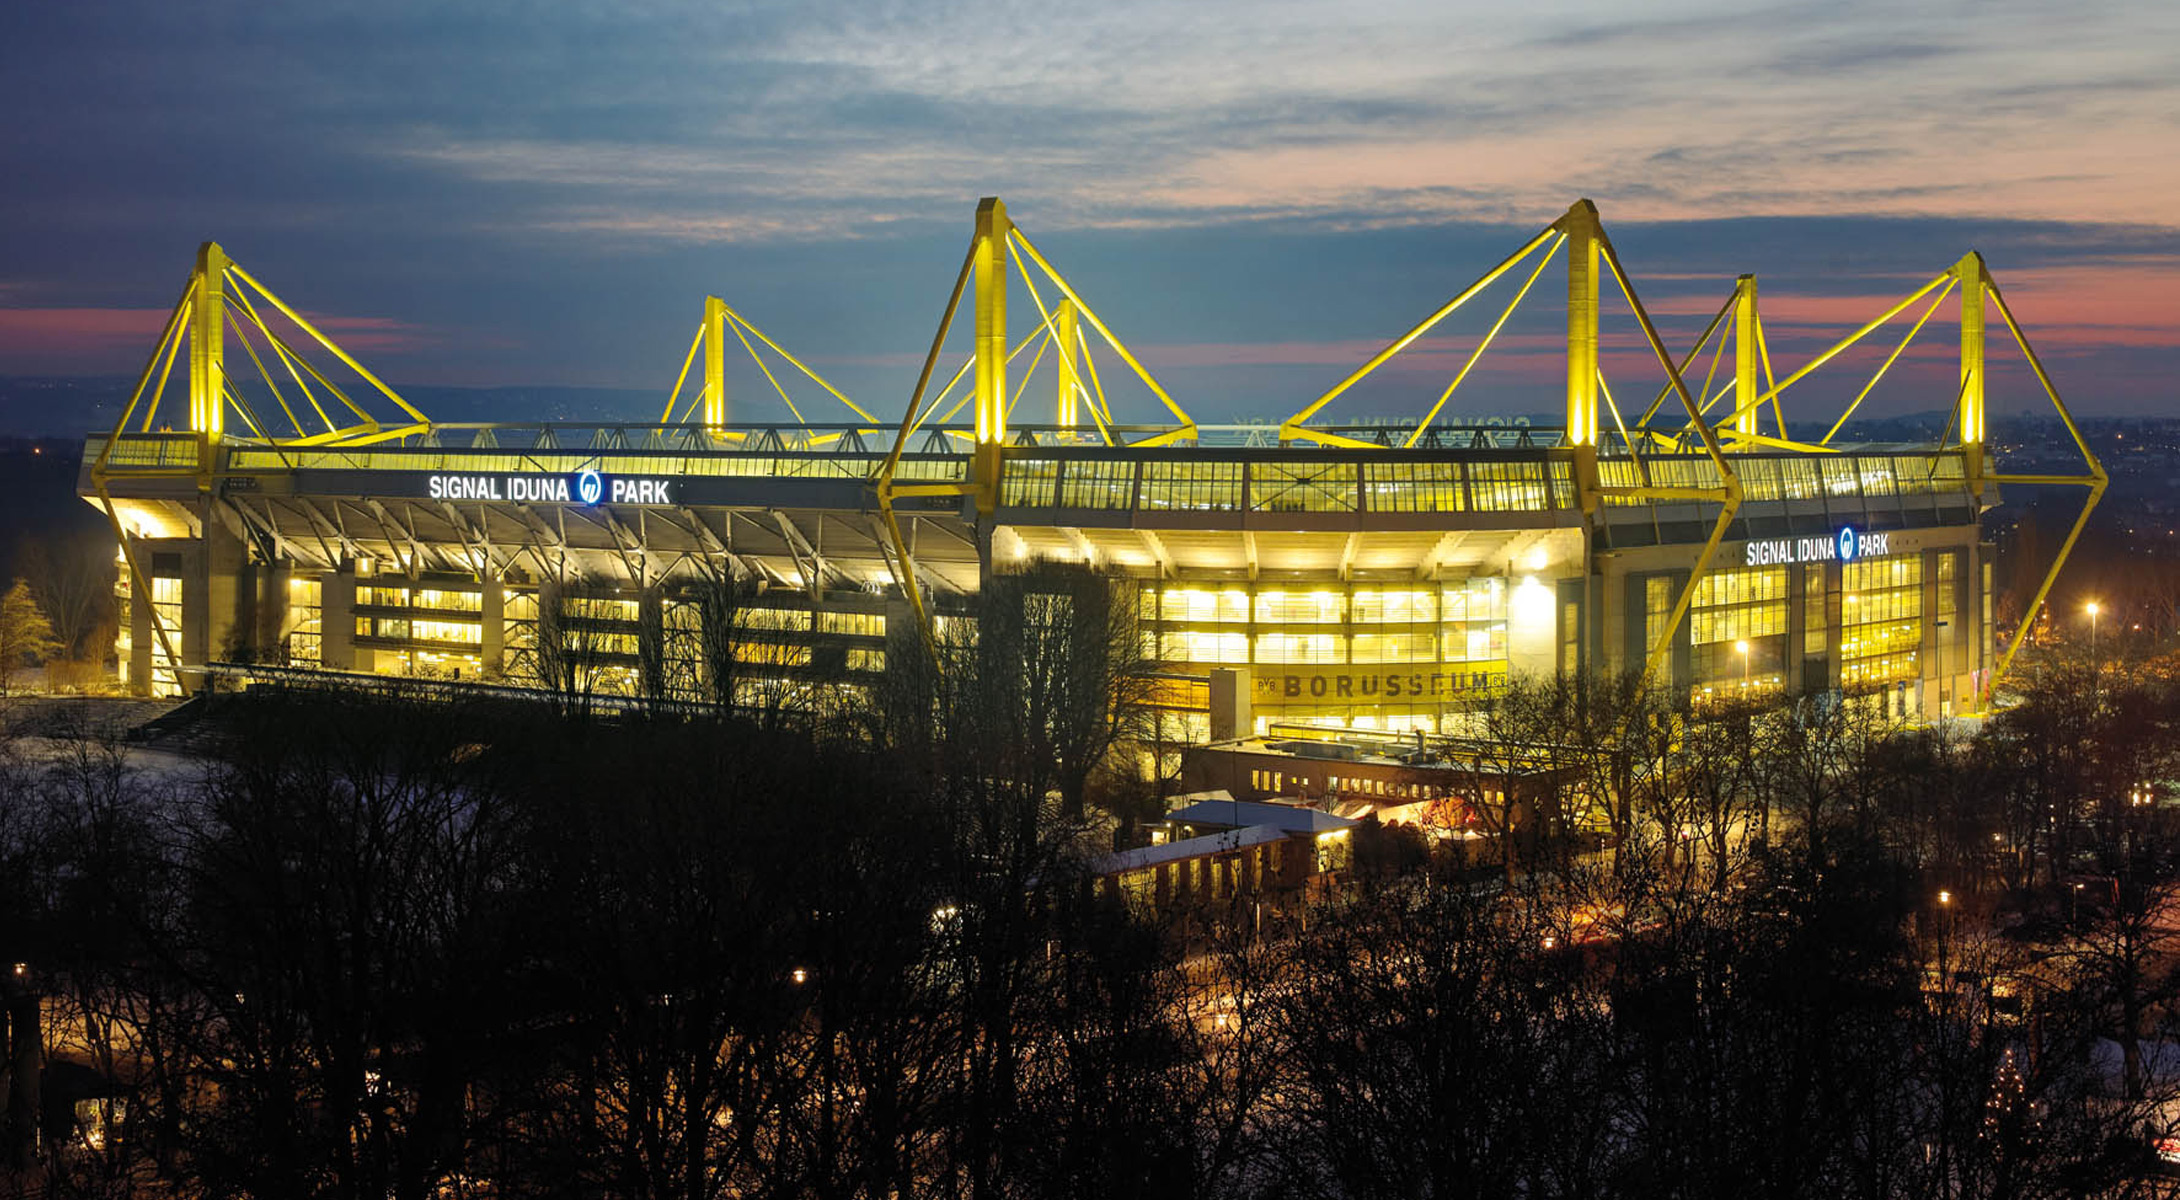 即使是在以建筑业和优秀的球场设计闻名于世的德国